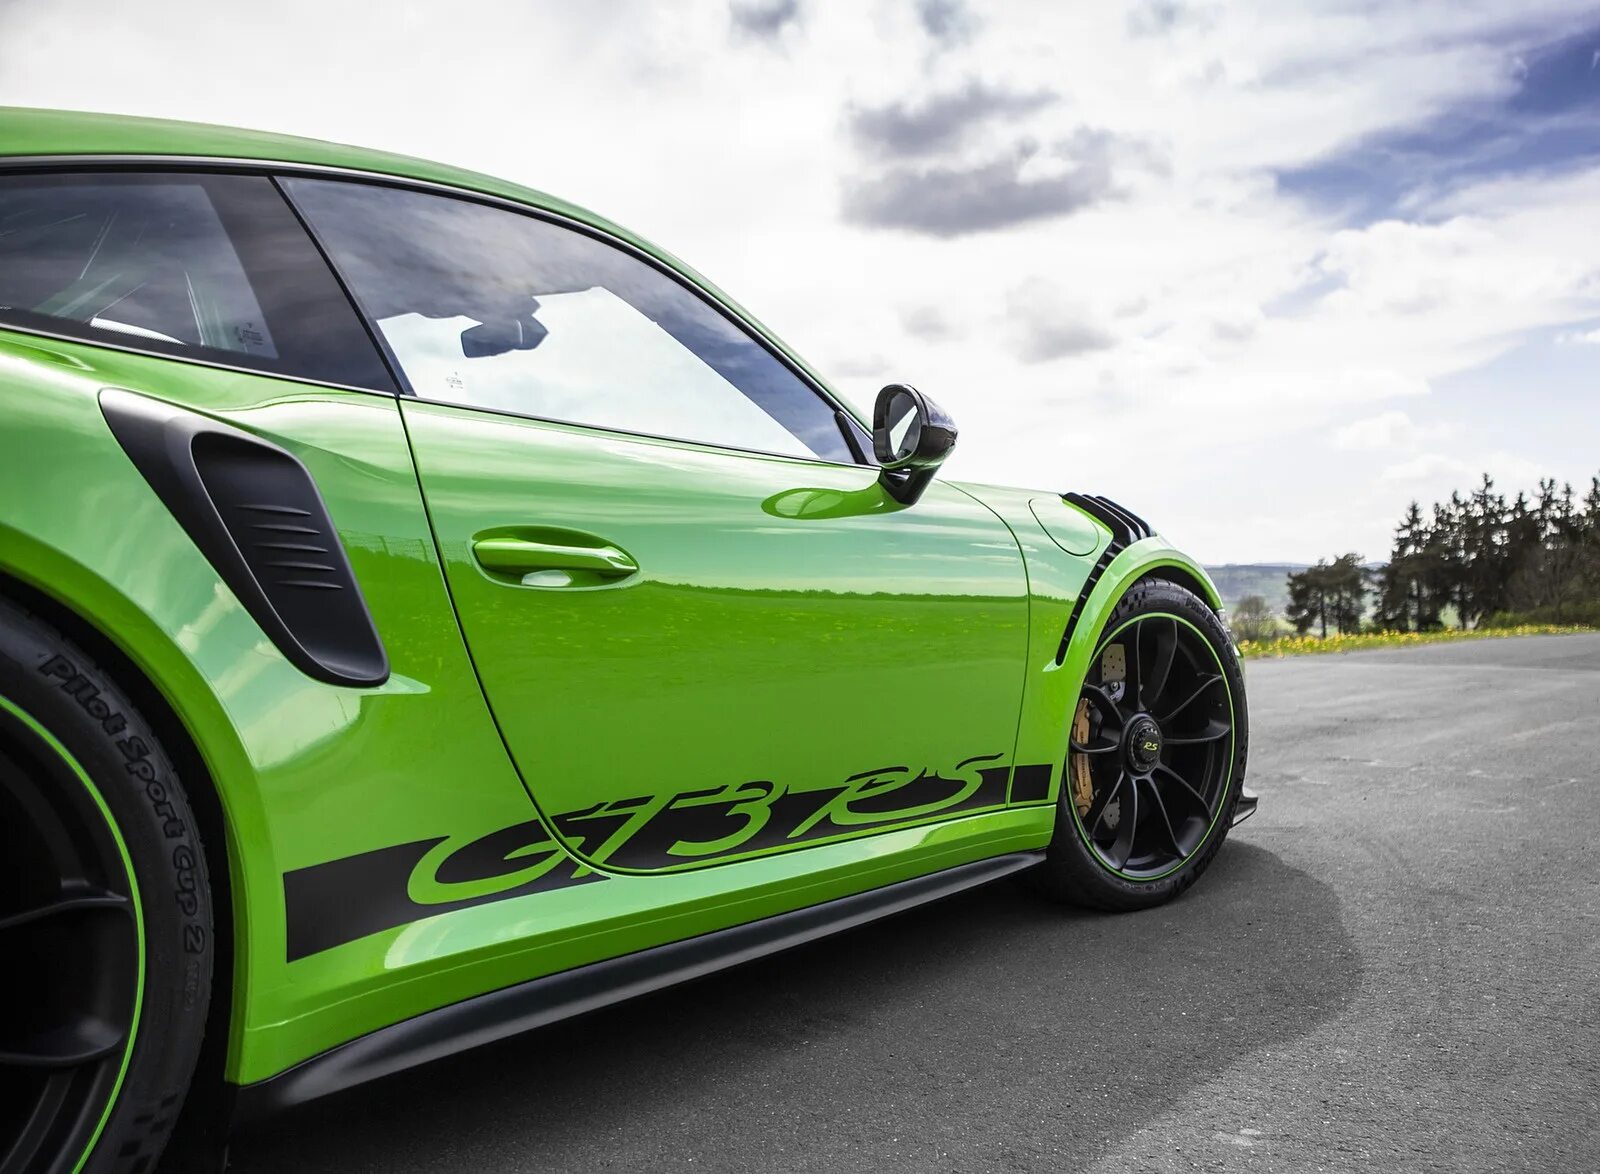 Green detail. Porsche 911 gt3 RS зеленый. Porsche gt3 RS. Порше гт3 2019 салатовый. Зеленый Порше ГТ 2 РС.